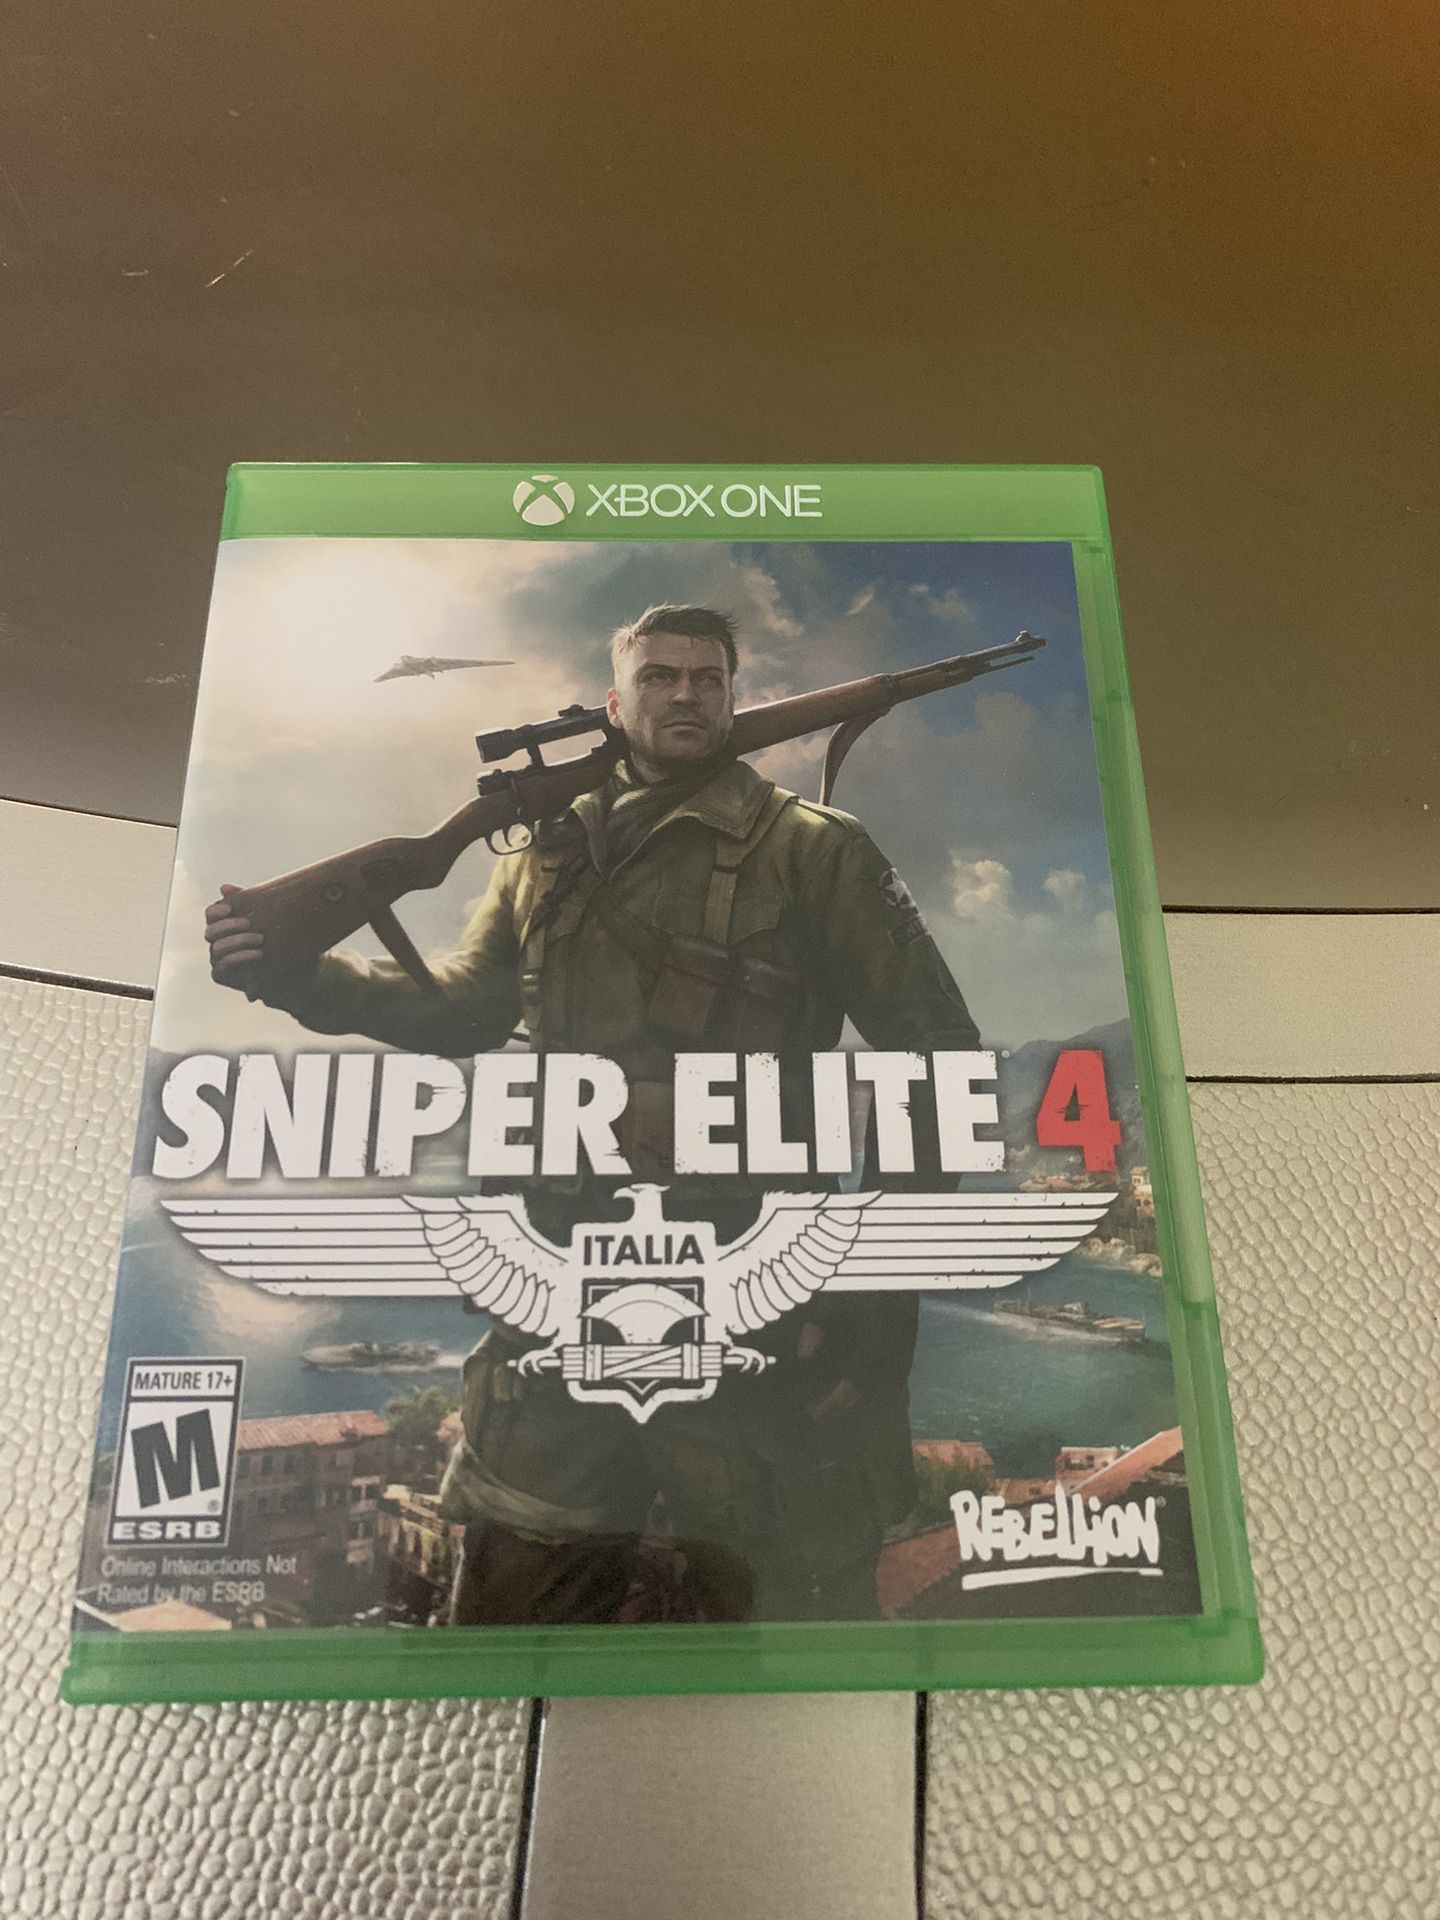 Sniper Elite 4 on Xbox One